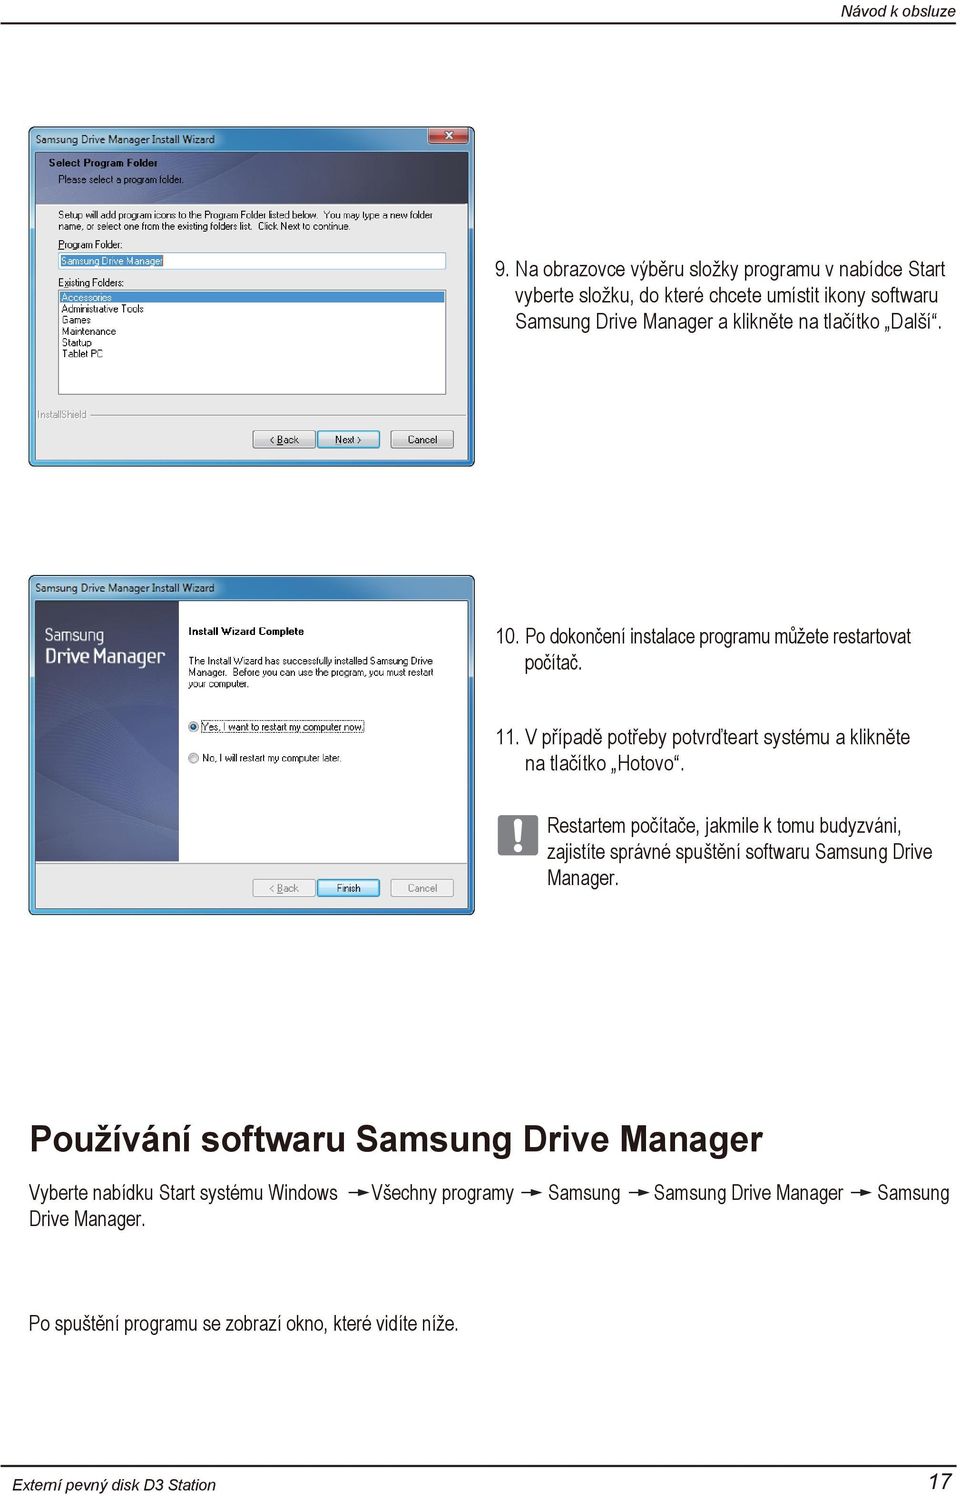 Restartem počítače, jakmile k tomu budyzváni, zajistíte správné spuštění softwaru Samsung Drive Manager.